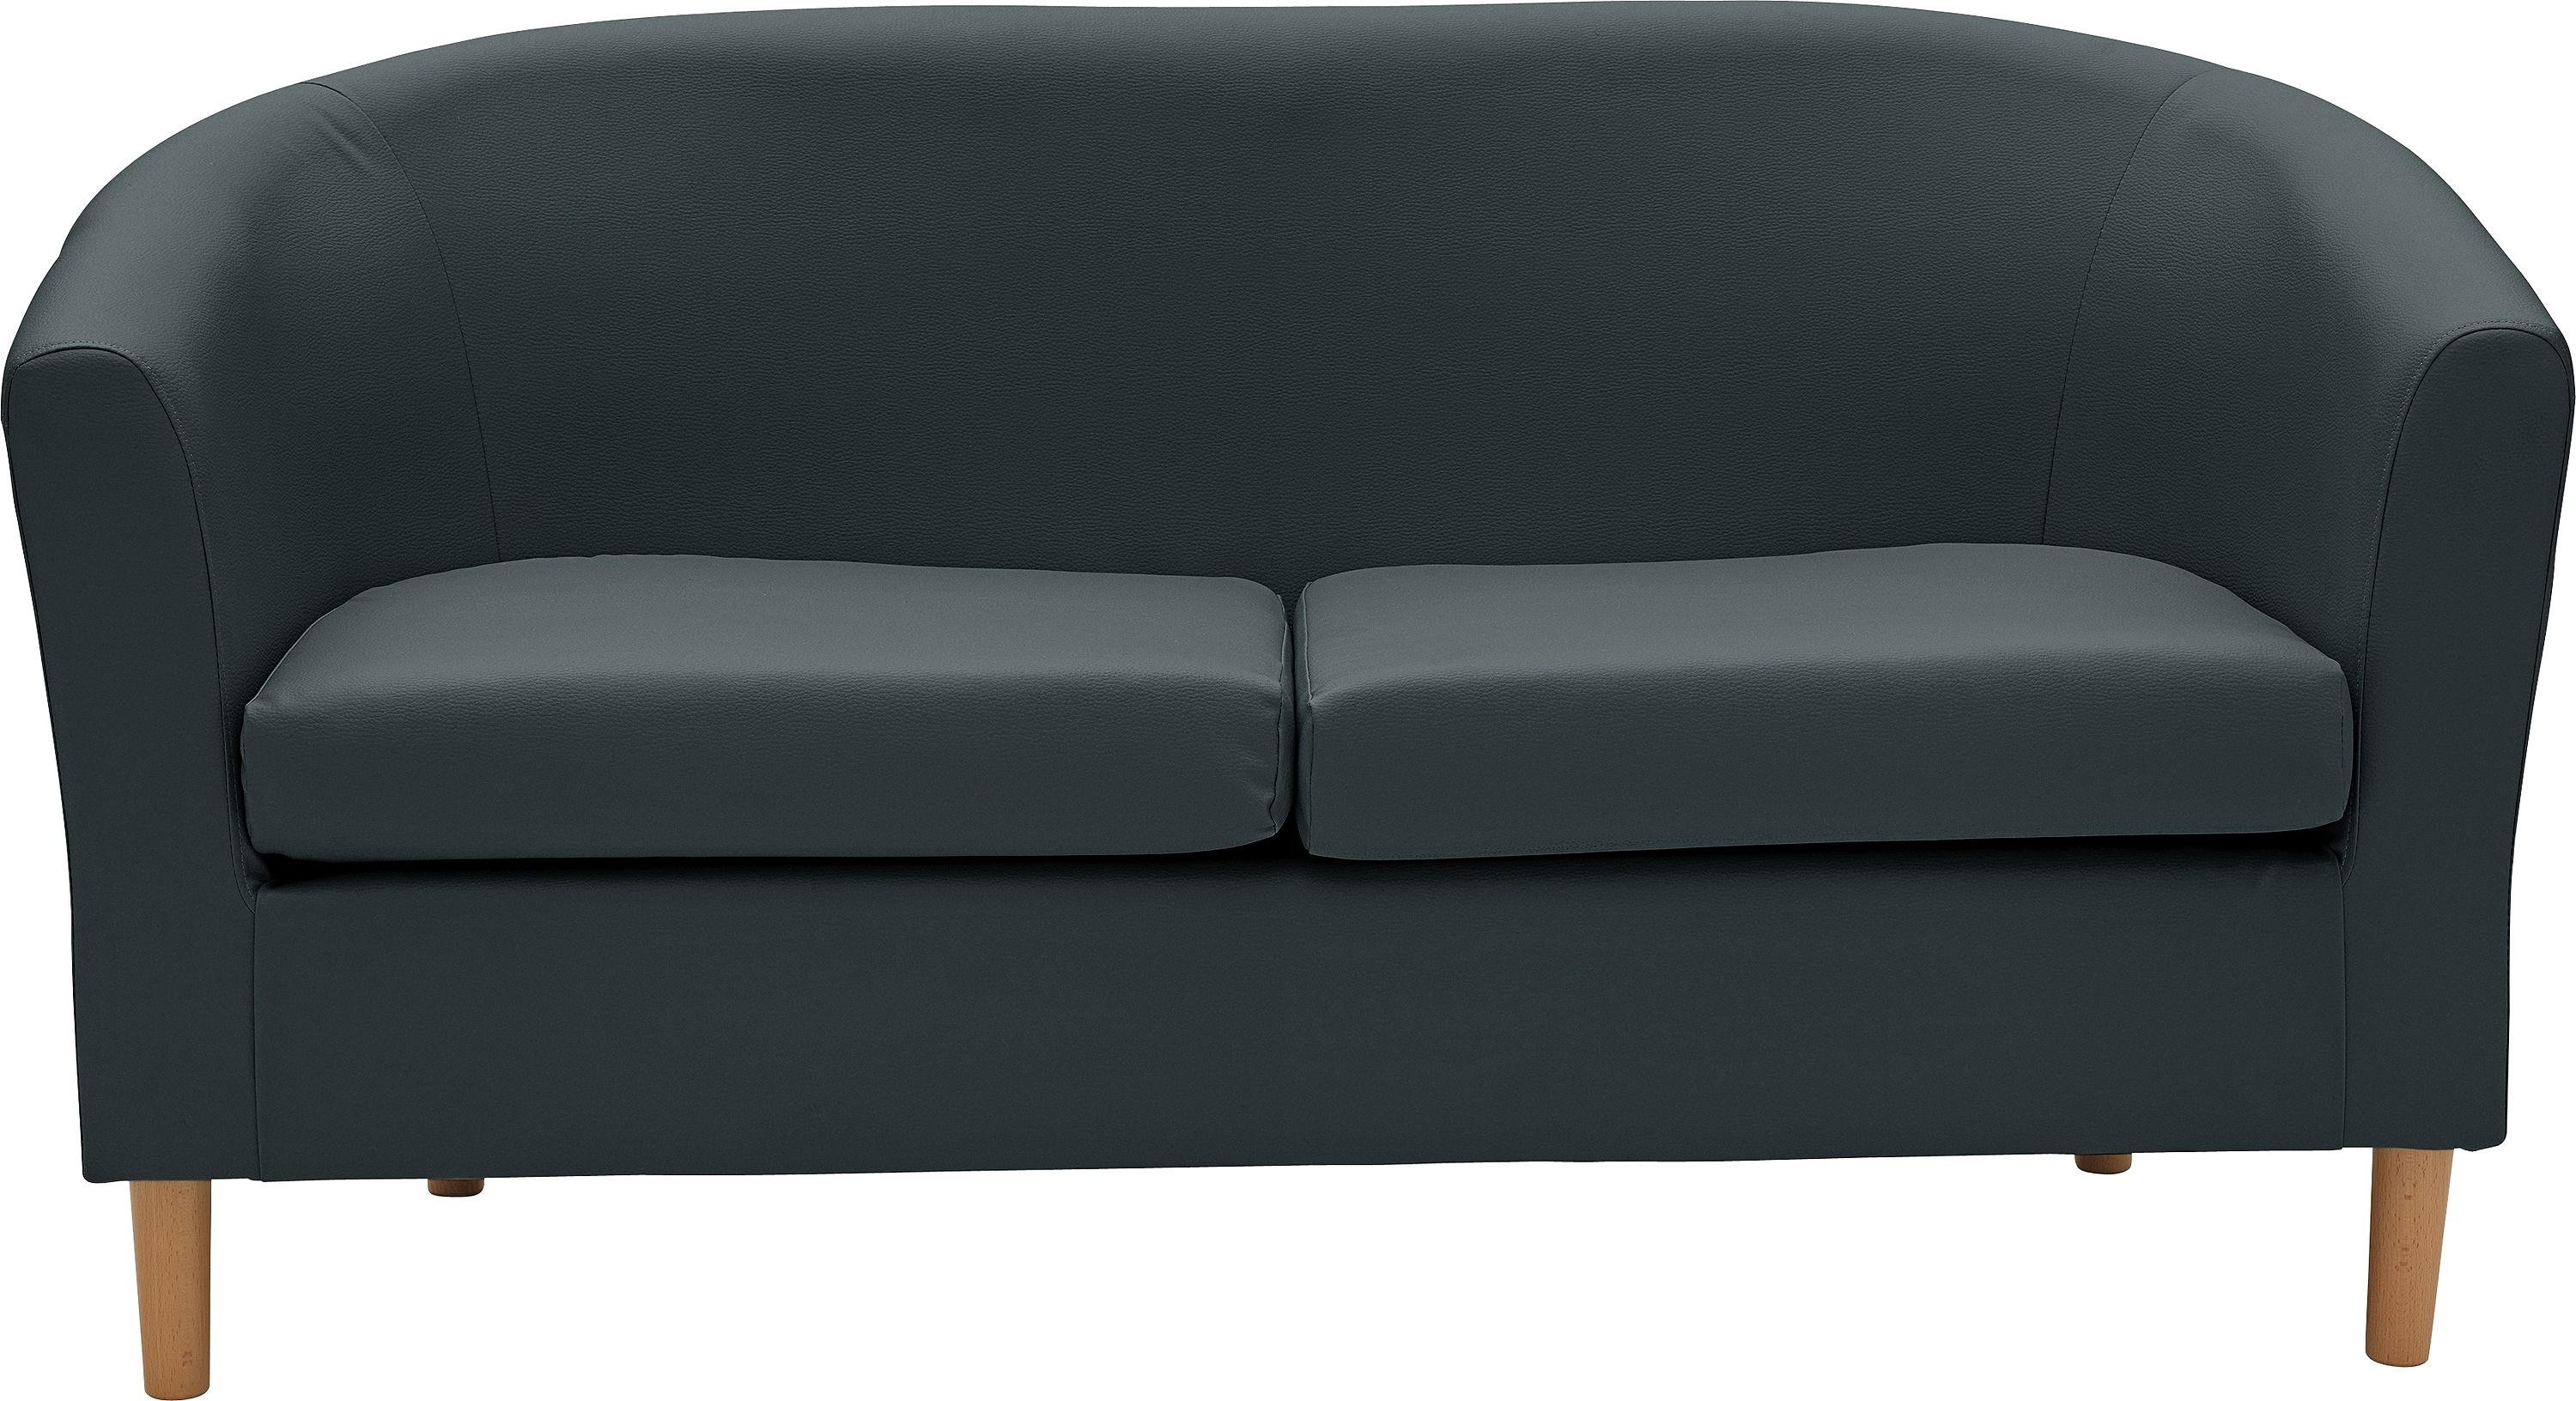 Argos Home 2 Seater Faux Leather Tub Sofa - Black (2468853) | Argos